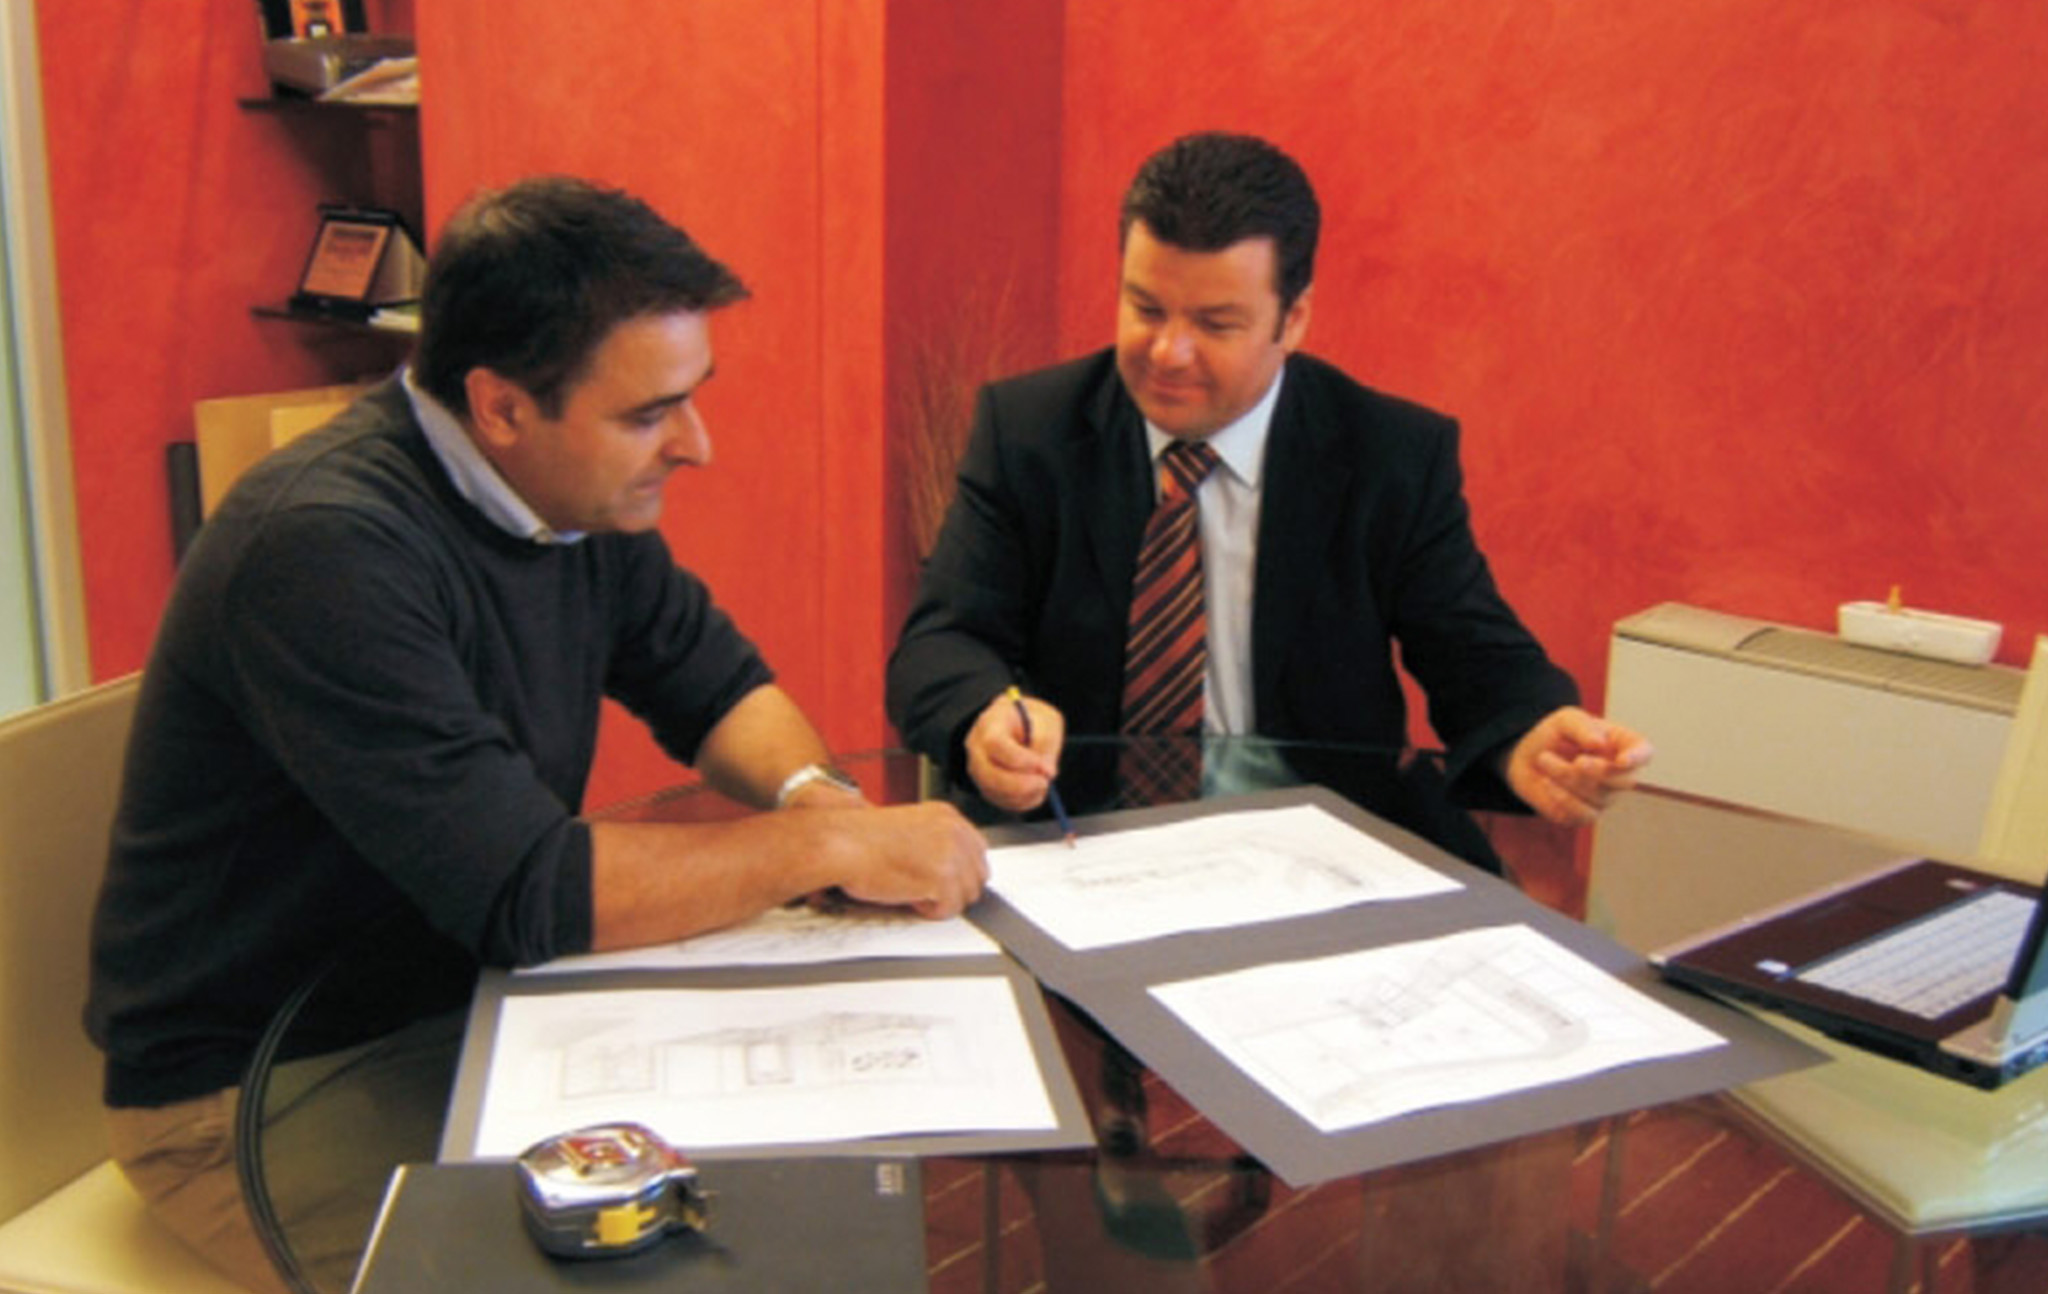 Detrazioni fiscali e bonus ristrutturazione per l'acquisto di serramenti ed infissi a Rovigo e Ferrara